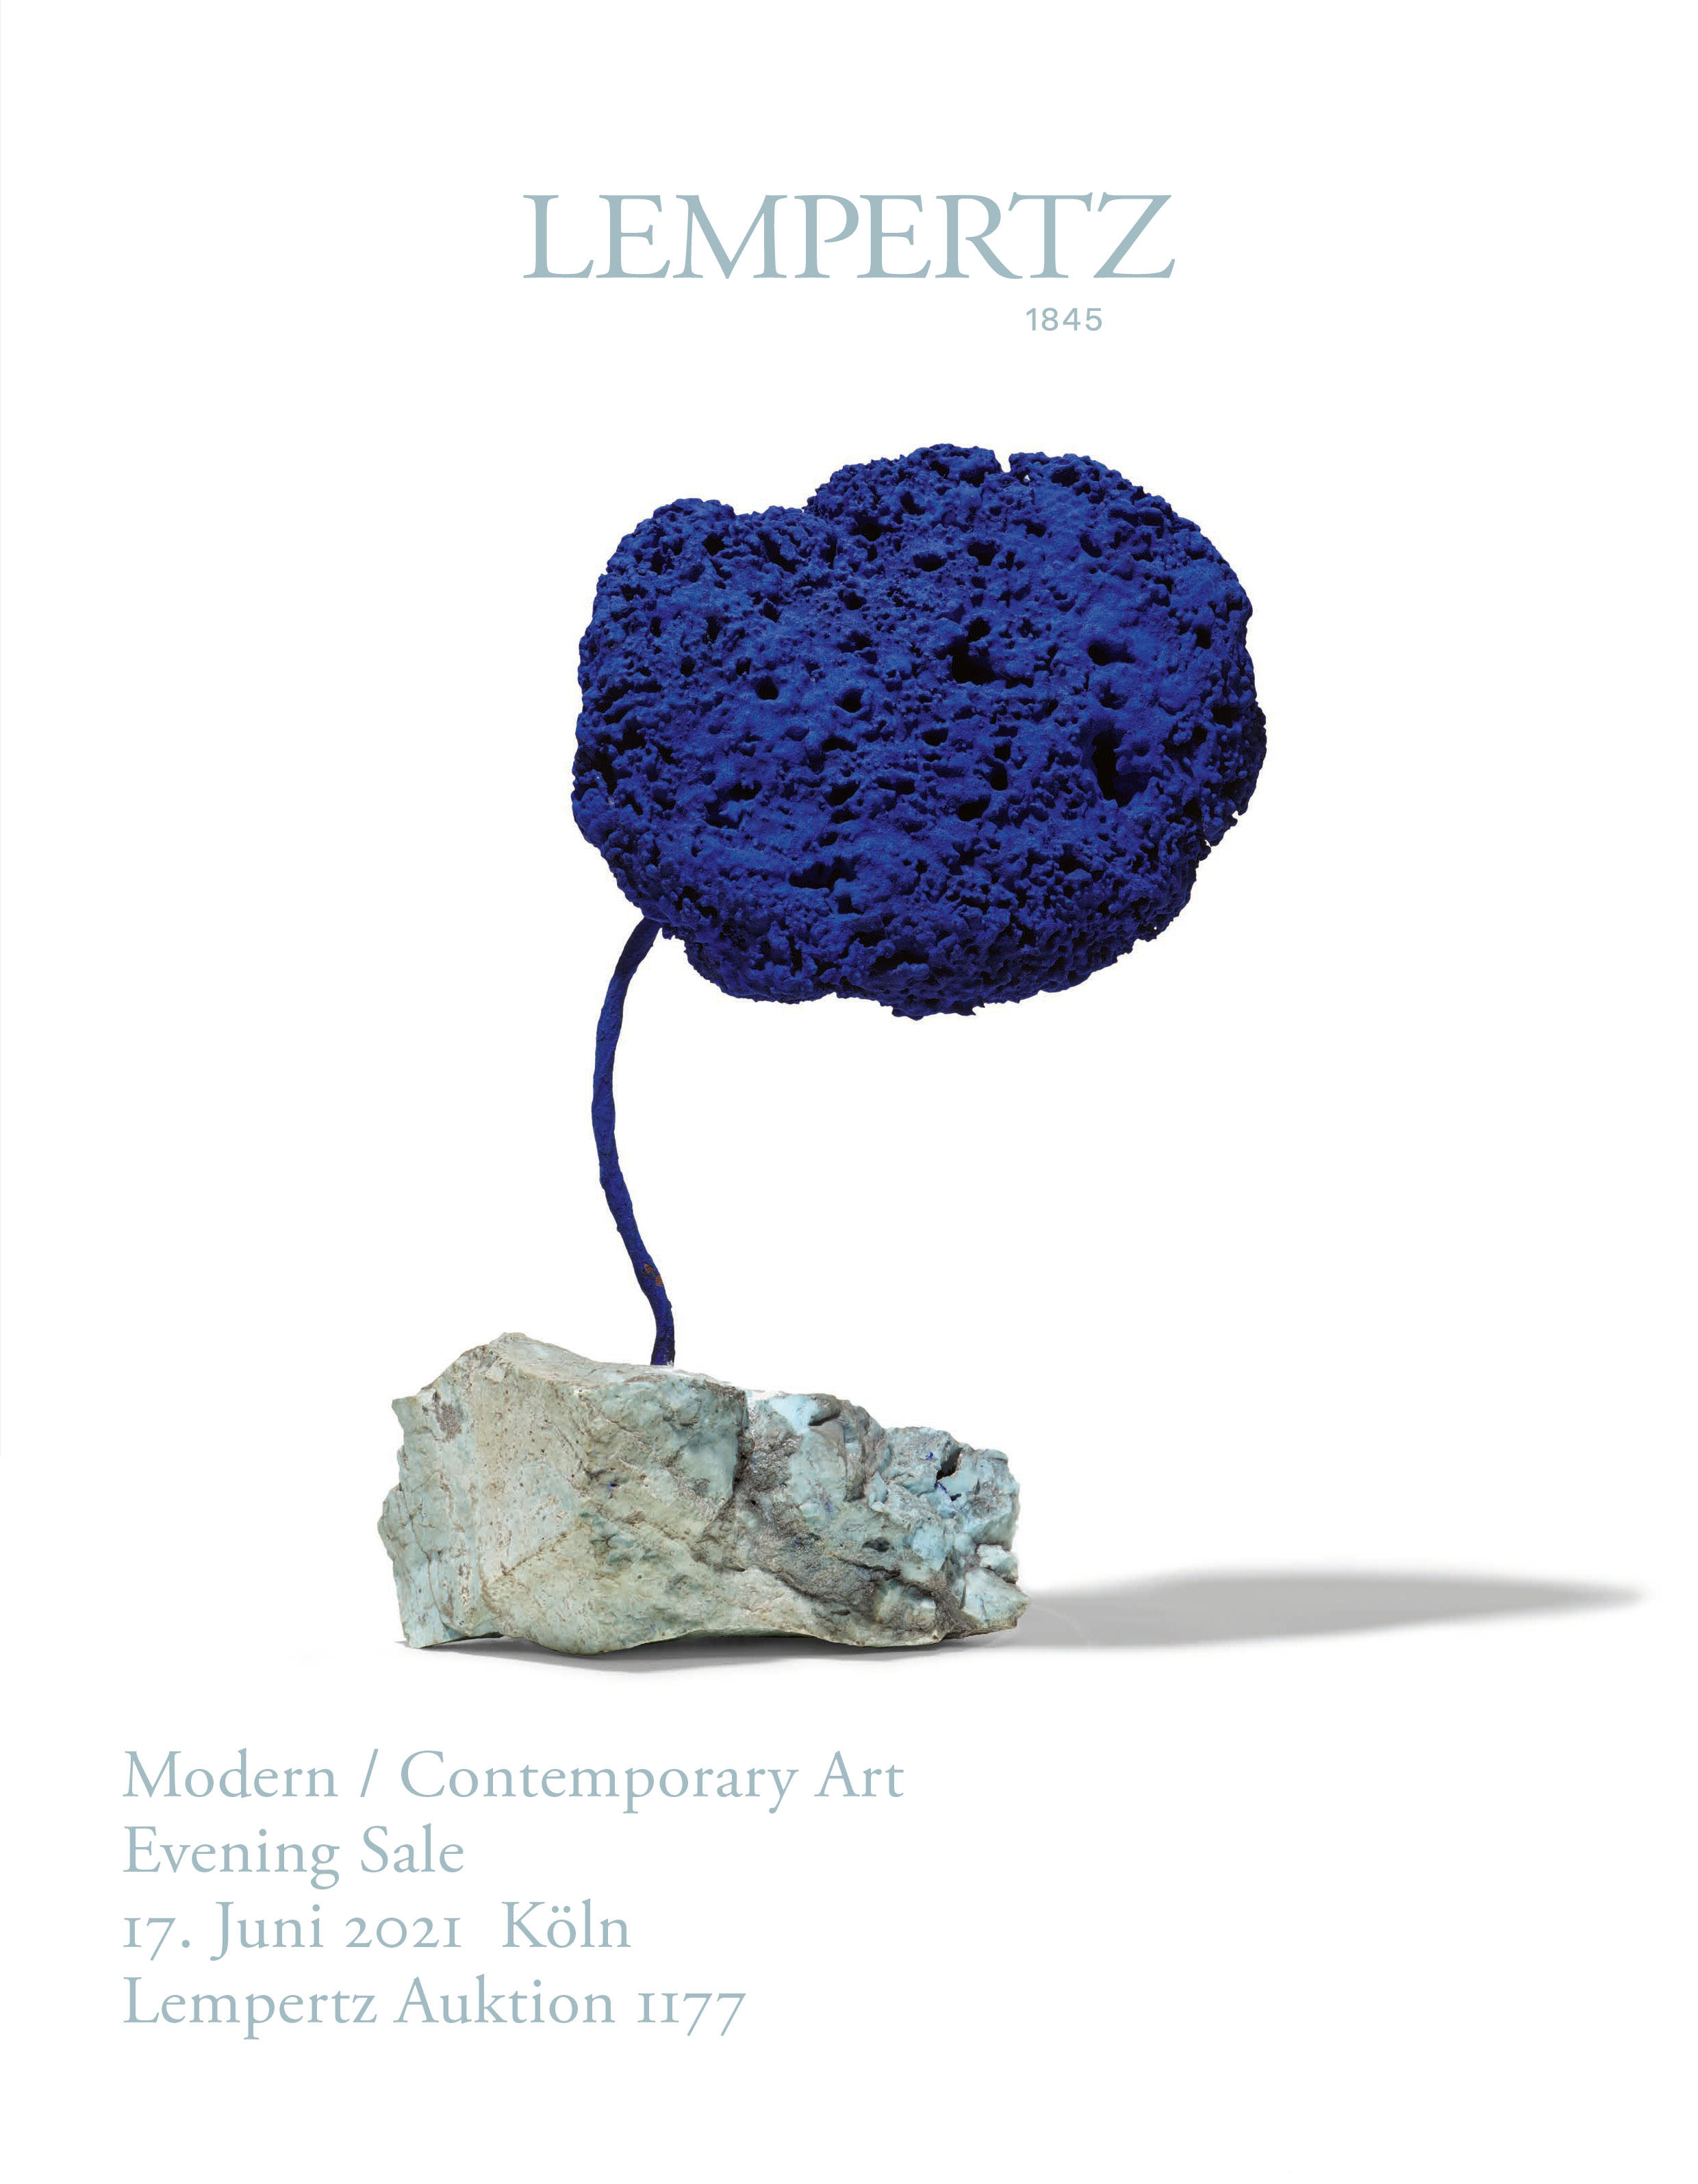 Auktionskatalog - Moderne/Zeitgenössische Kunst - Evening Sale - Online Katalog - Auktion 1177 – Ersteigern Sie hochwertige Kunst in der nächsten Lempertz-Auktion!